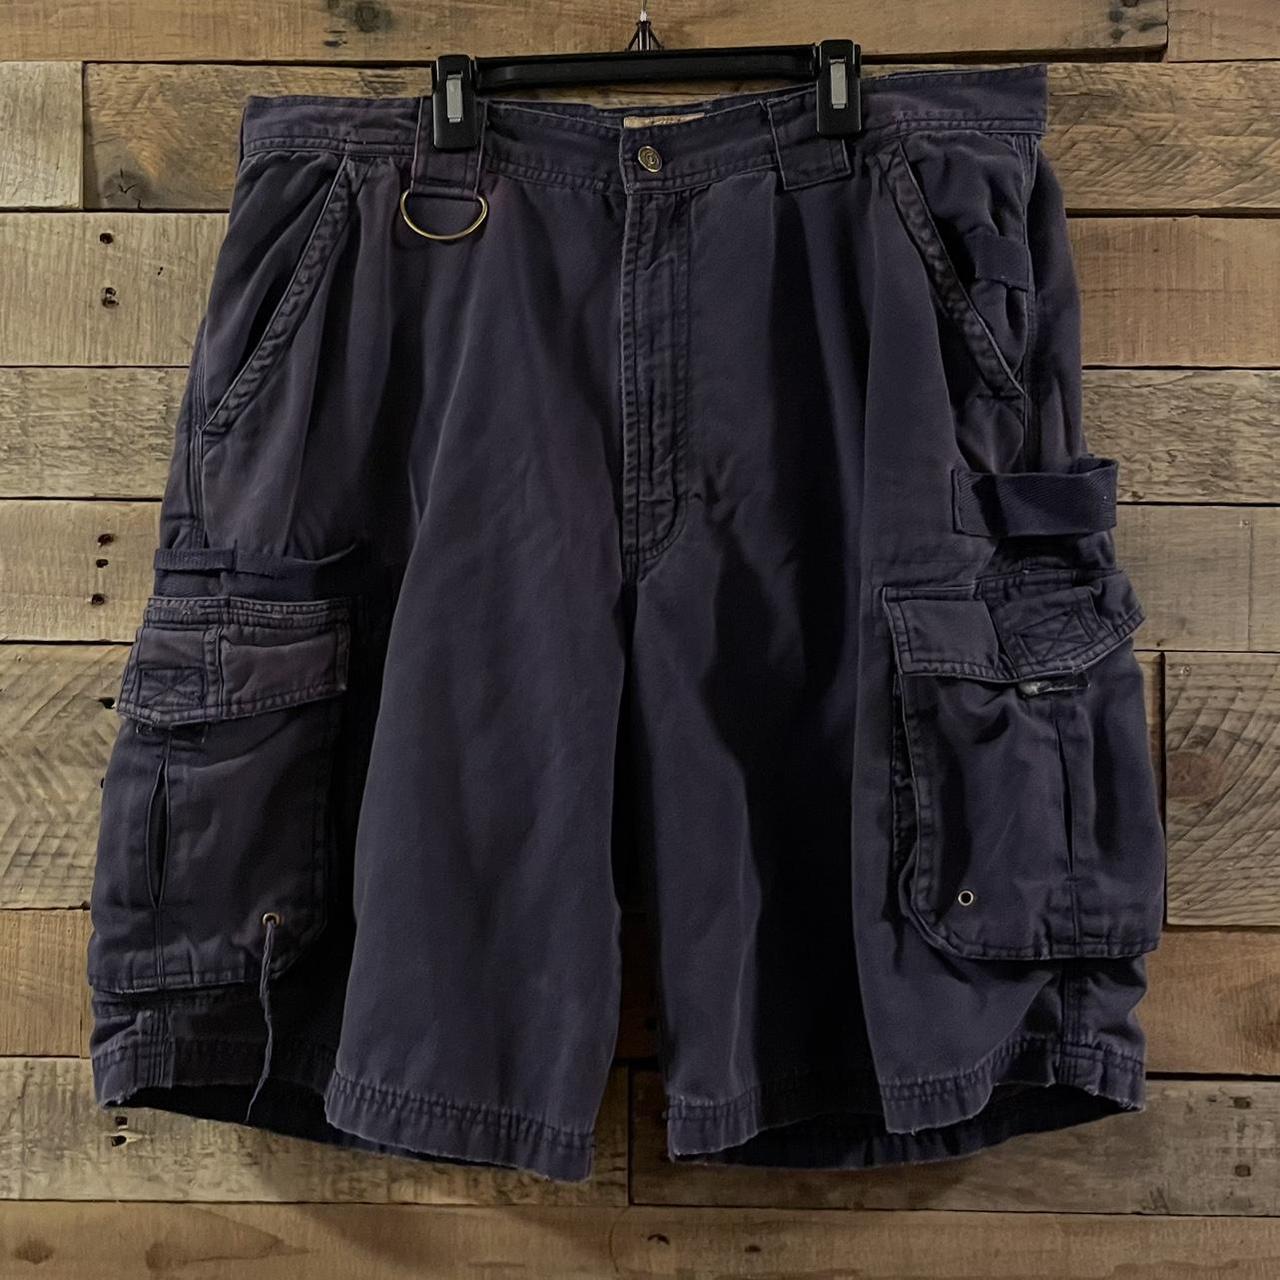 Purple WearGuard wide-leg cargo shorts Waist size... - Depop